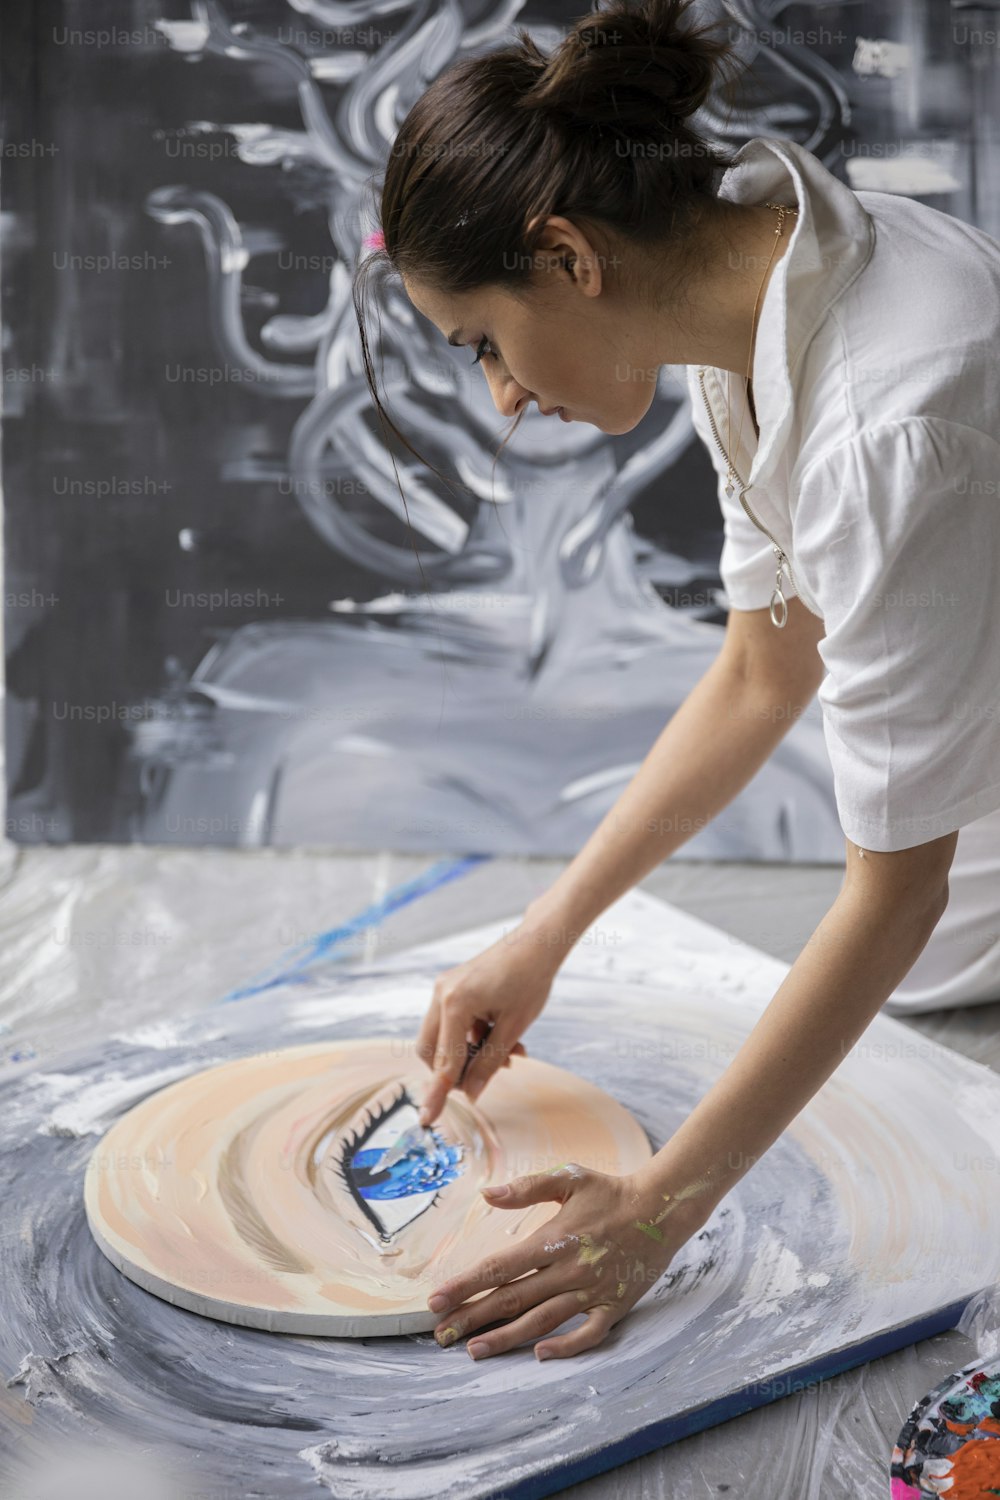 uma mulher em uma camisa branca está trabalhando em uma obra de arte